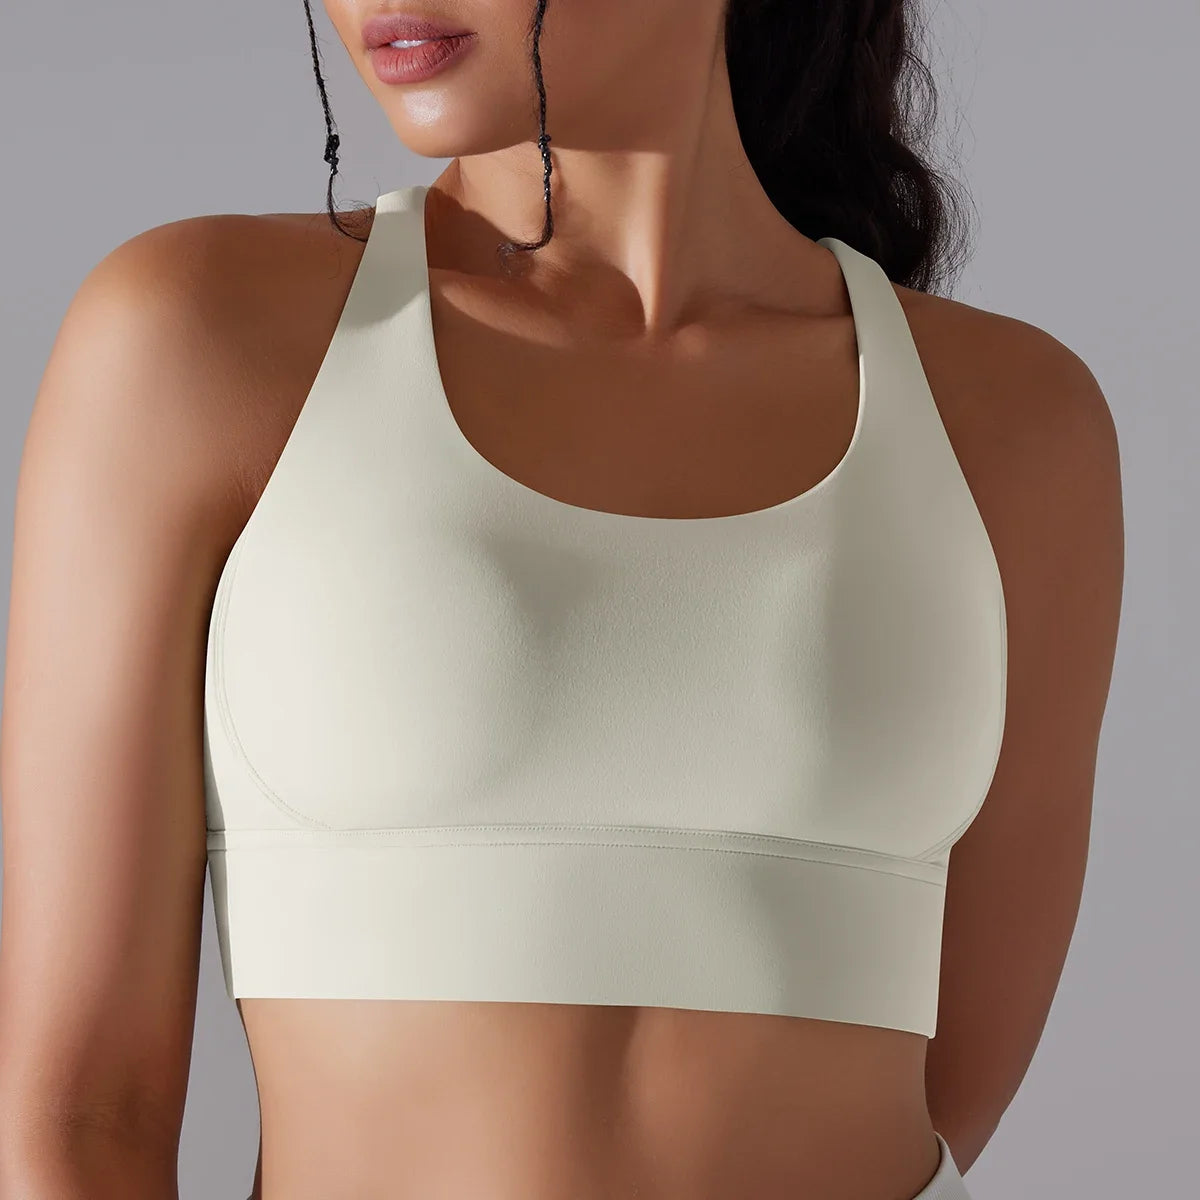 Women's yoga bra tank top for fitness feel naked comfort